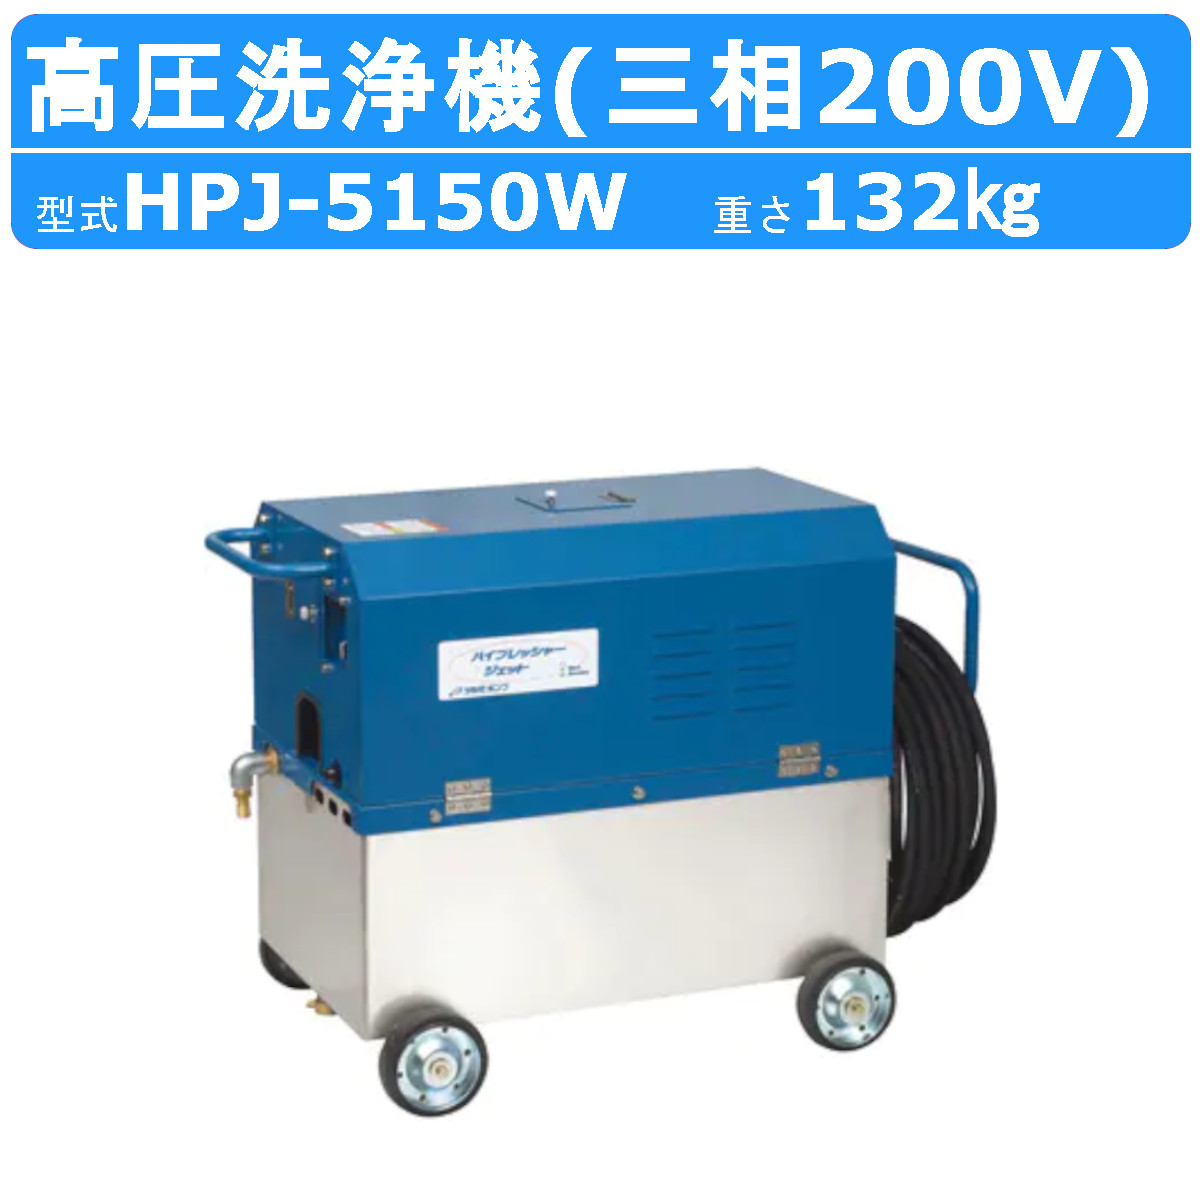 ツルミ 高圧洗浄機 HPJ-5150W 三相200V 高所揚水タイプ タンク付 